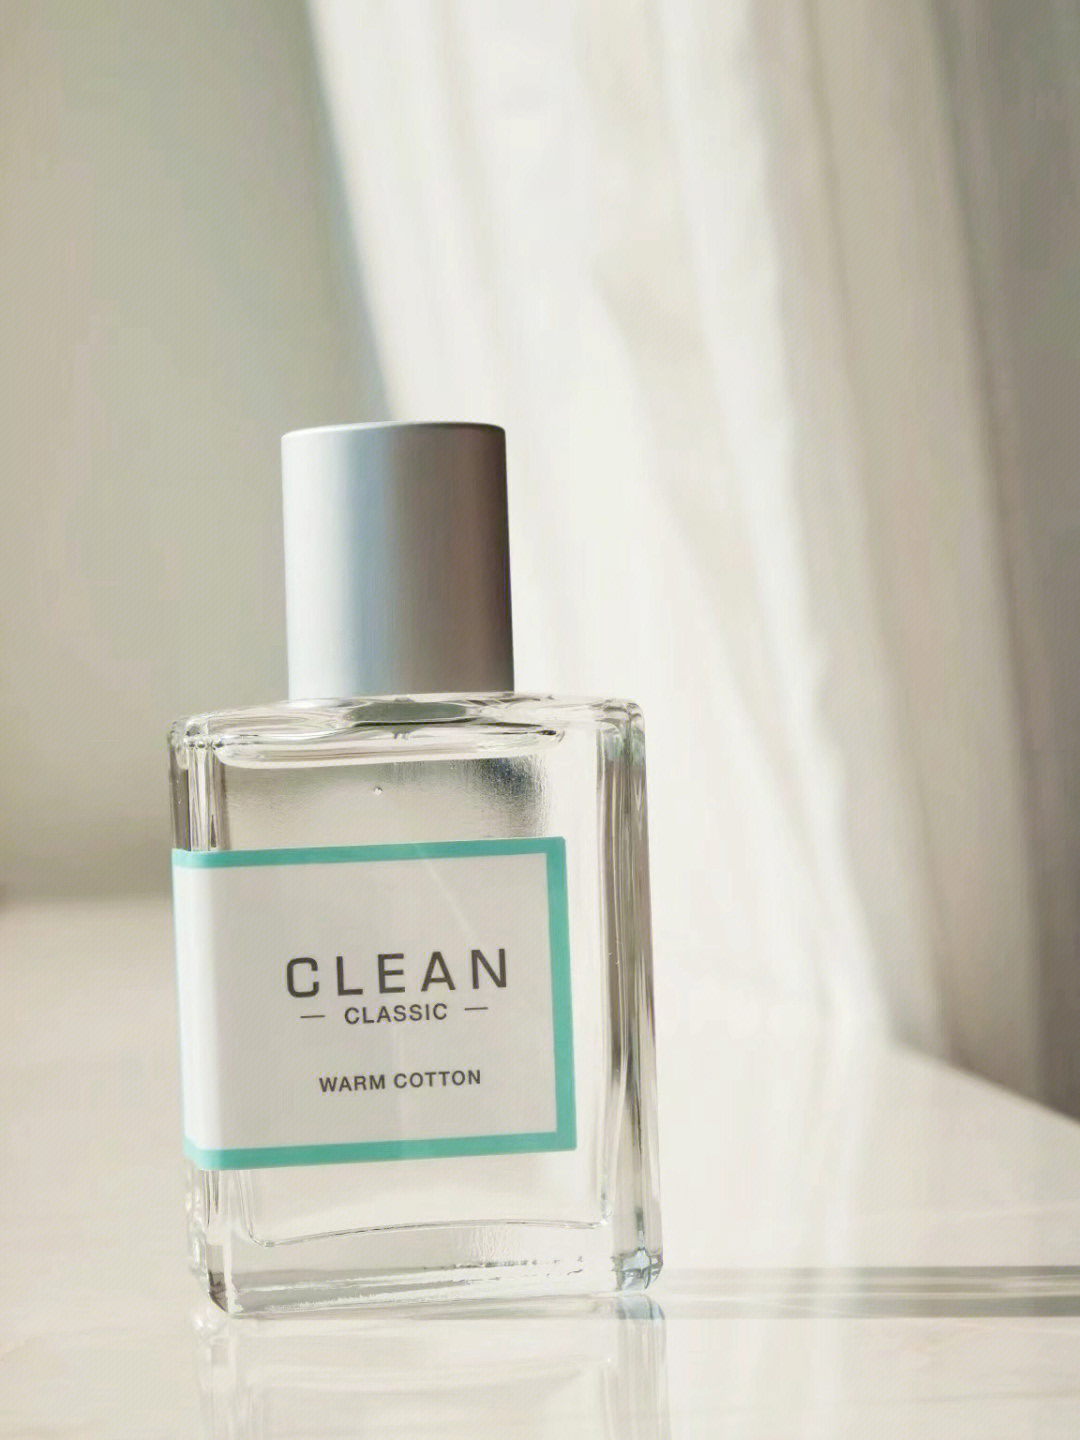 clean香水中国专柜图片